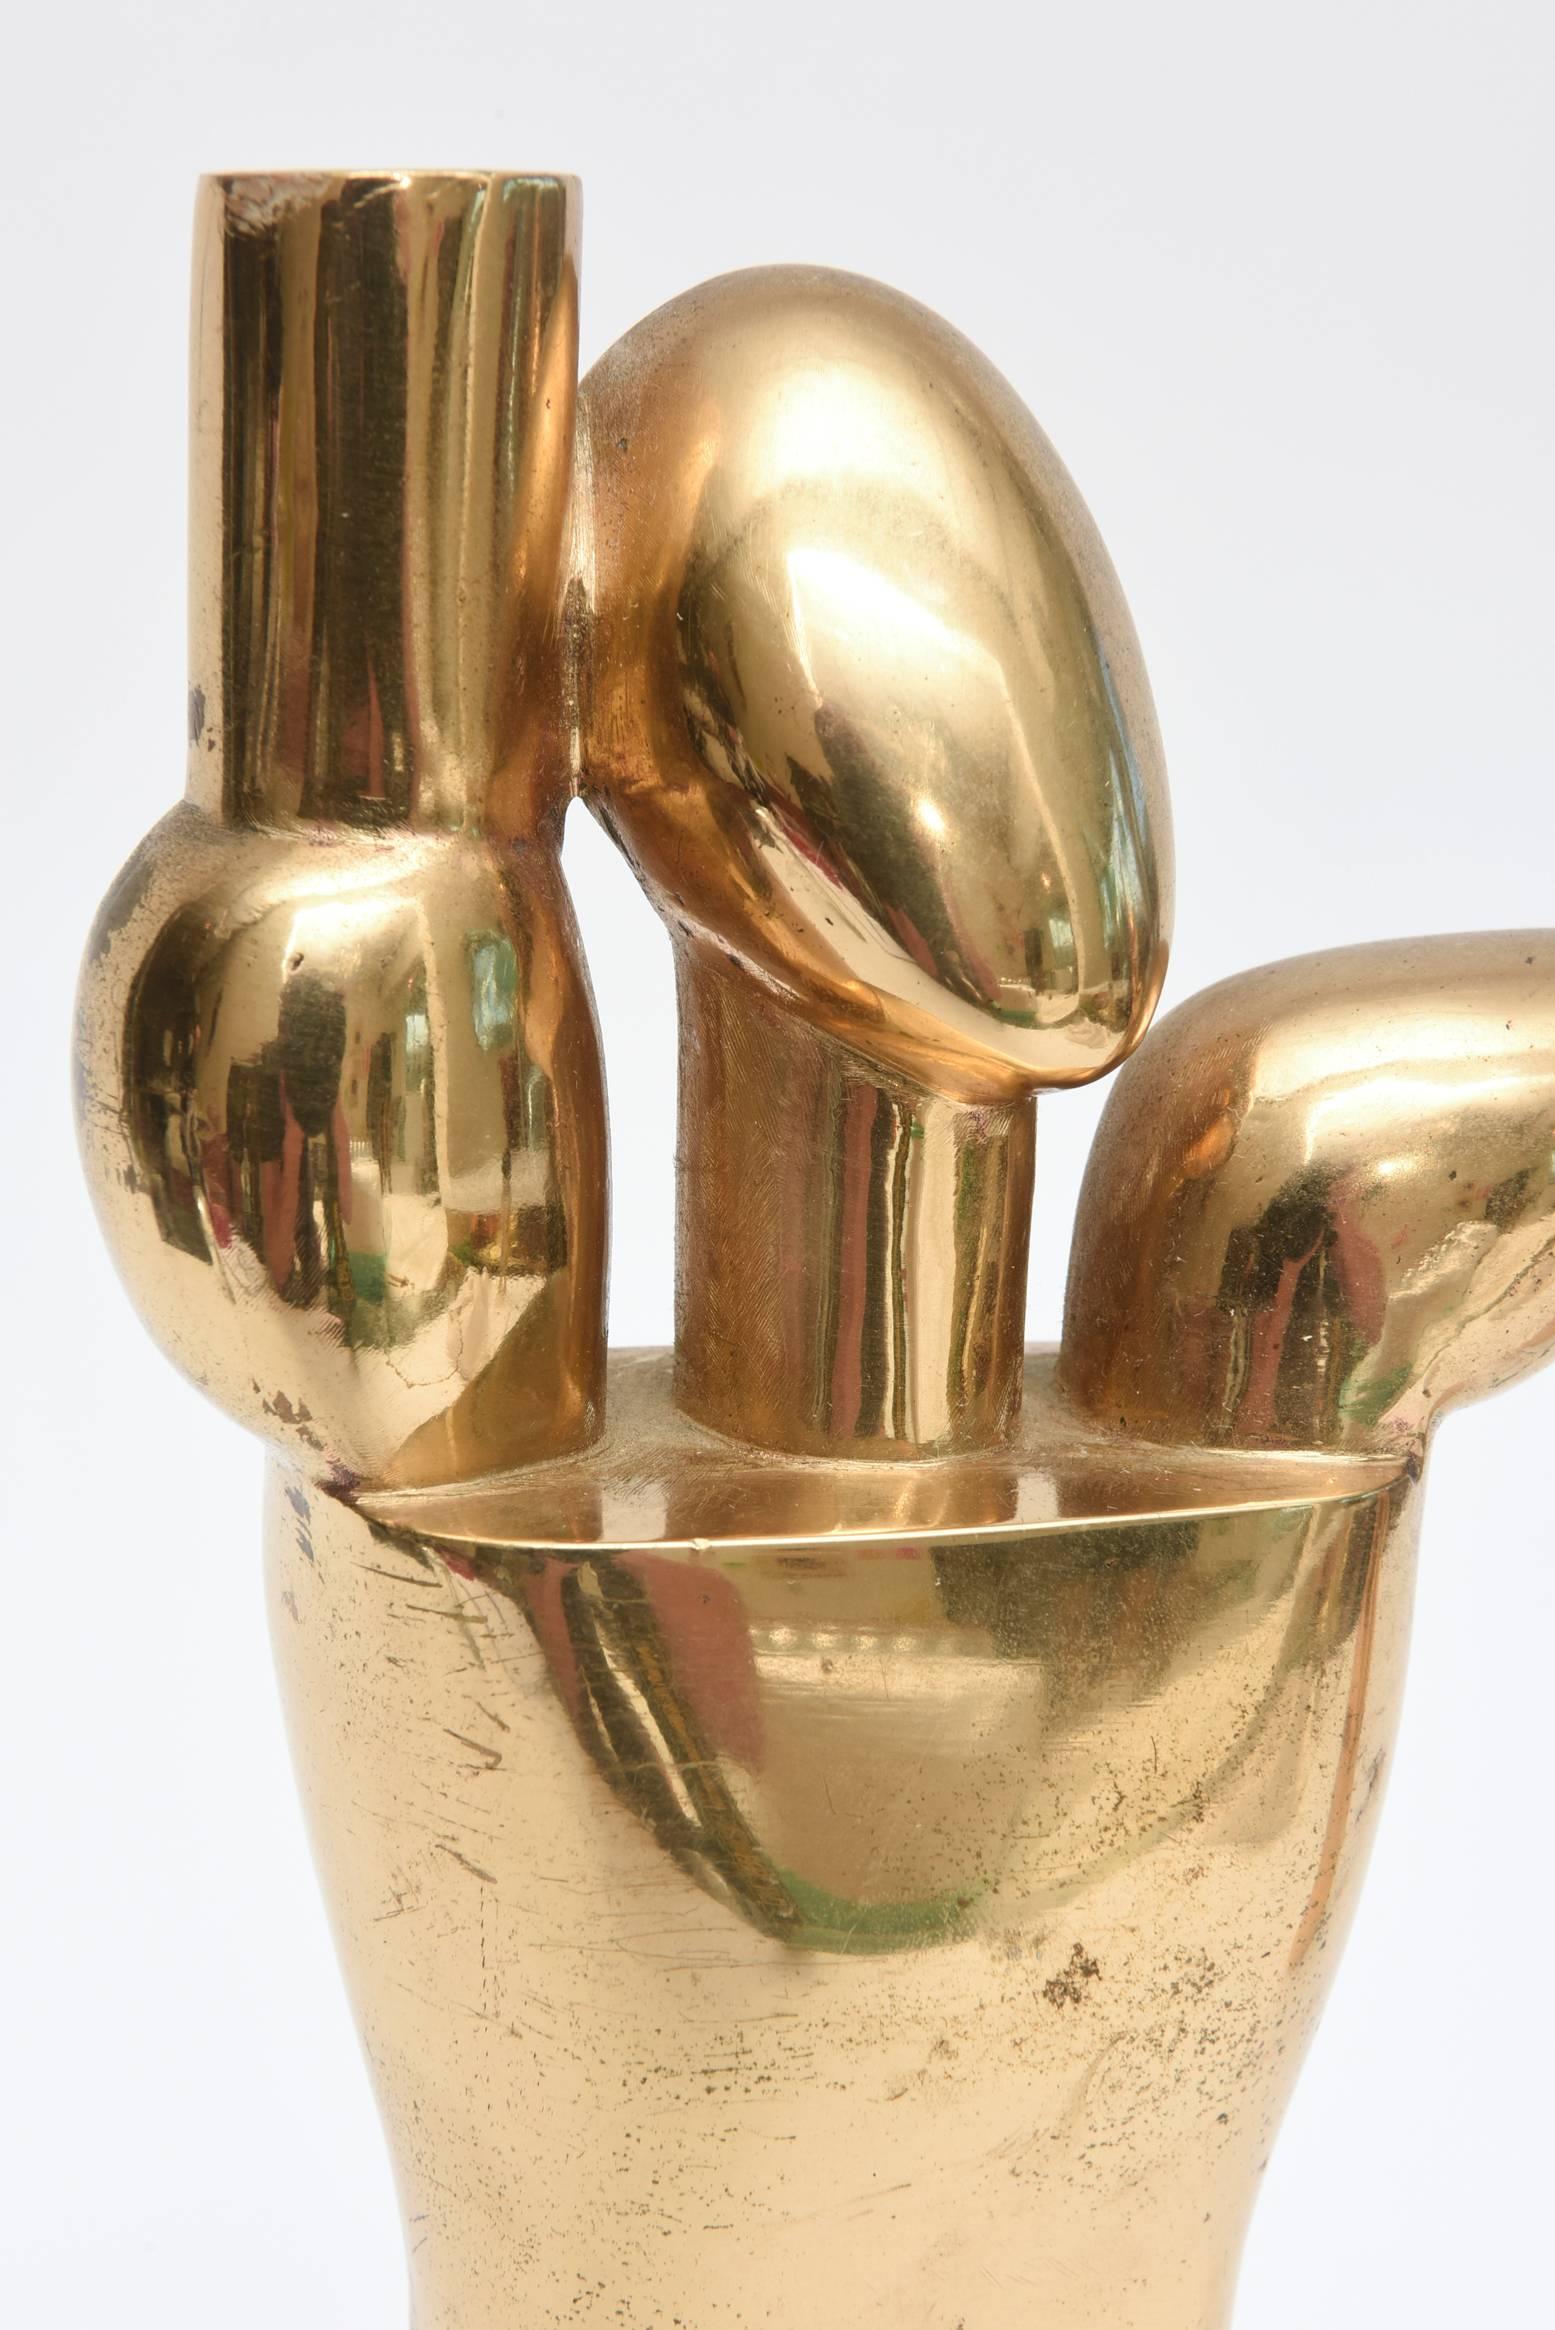 Diese erstaunlichen, schweren, modernistischen Vintage-Bronze-Skulpturen sind von Hugo Rabaey im Monogramm signiert und datiert. Wir schreiben das Jahr 1977. Sie können in vielen Formen und Haltungen präsentiert werden. Die kubistischen Formen und